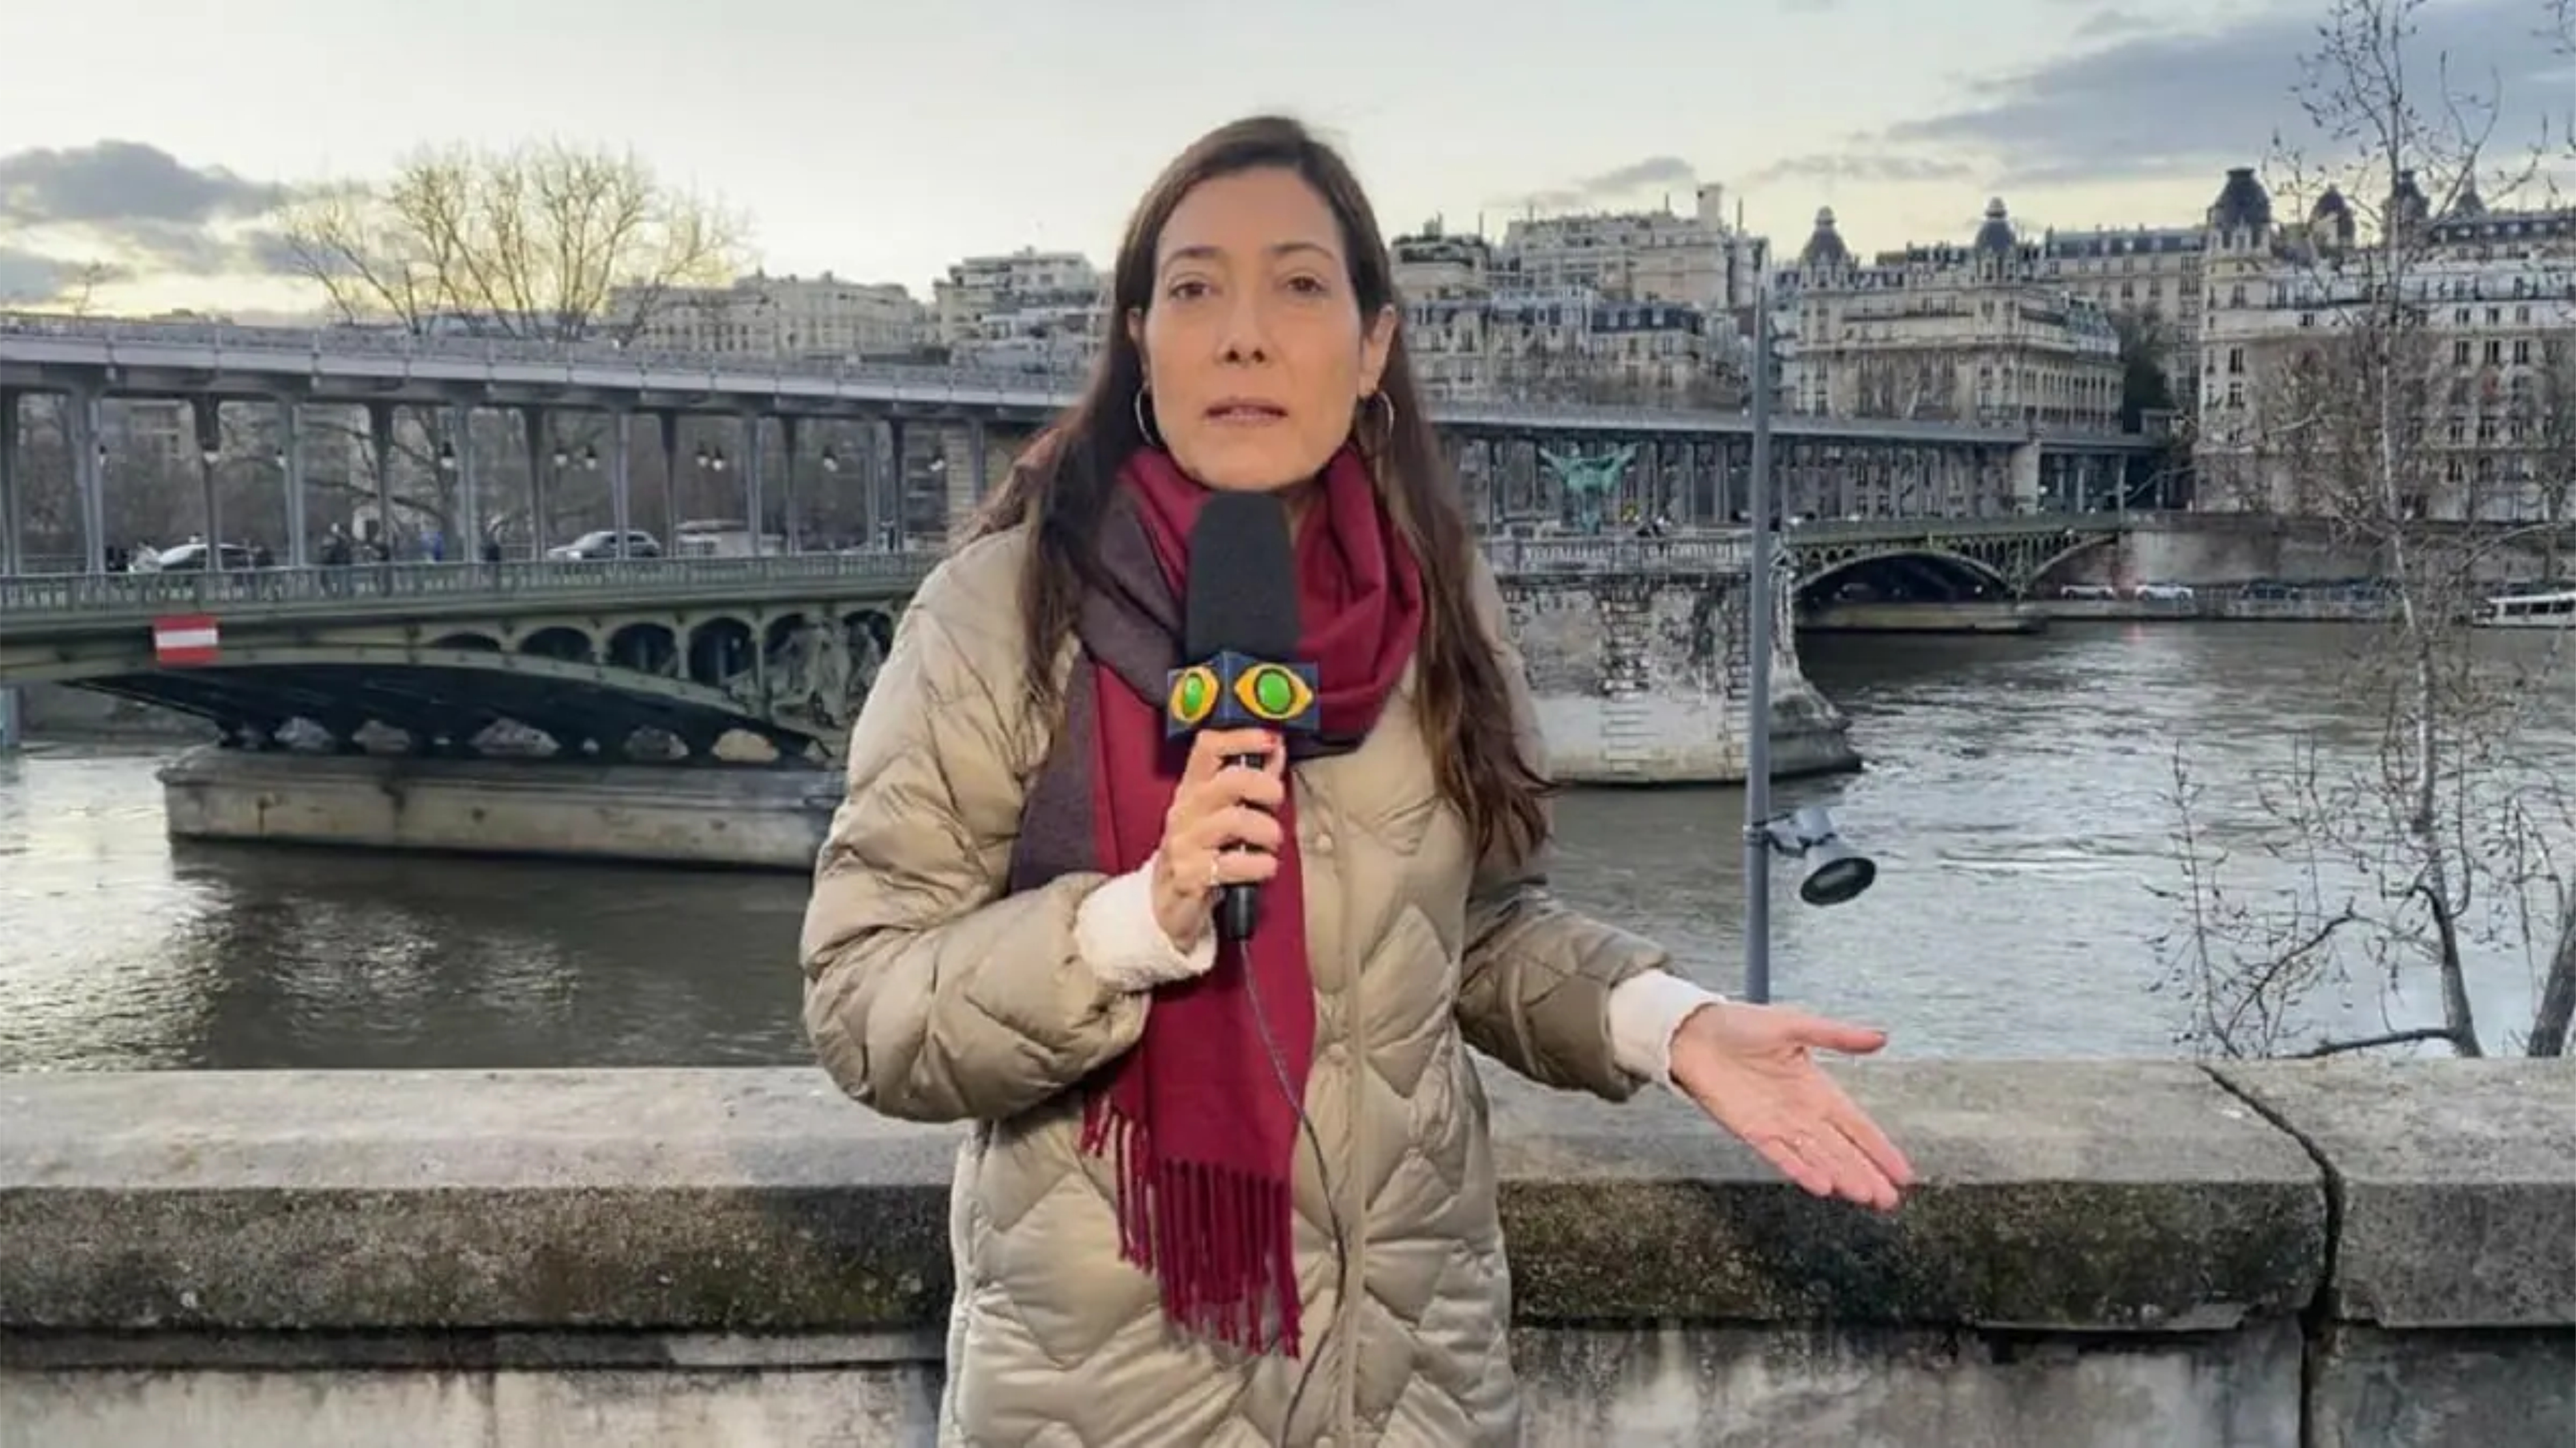 Repórter passa por momentos de tensão após ameaça de bomba em Paris - Imagem